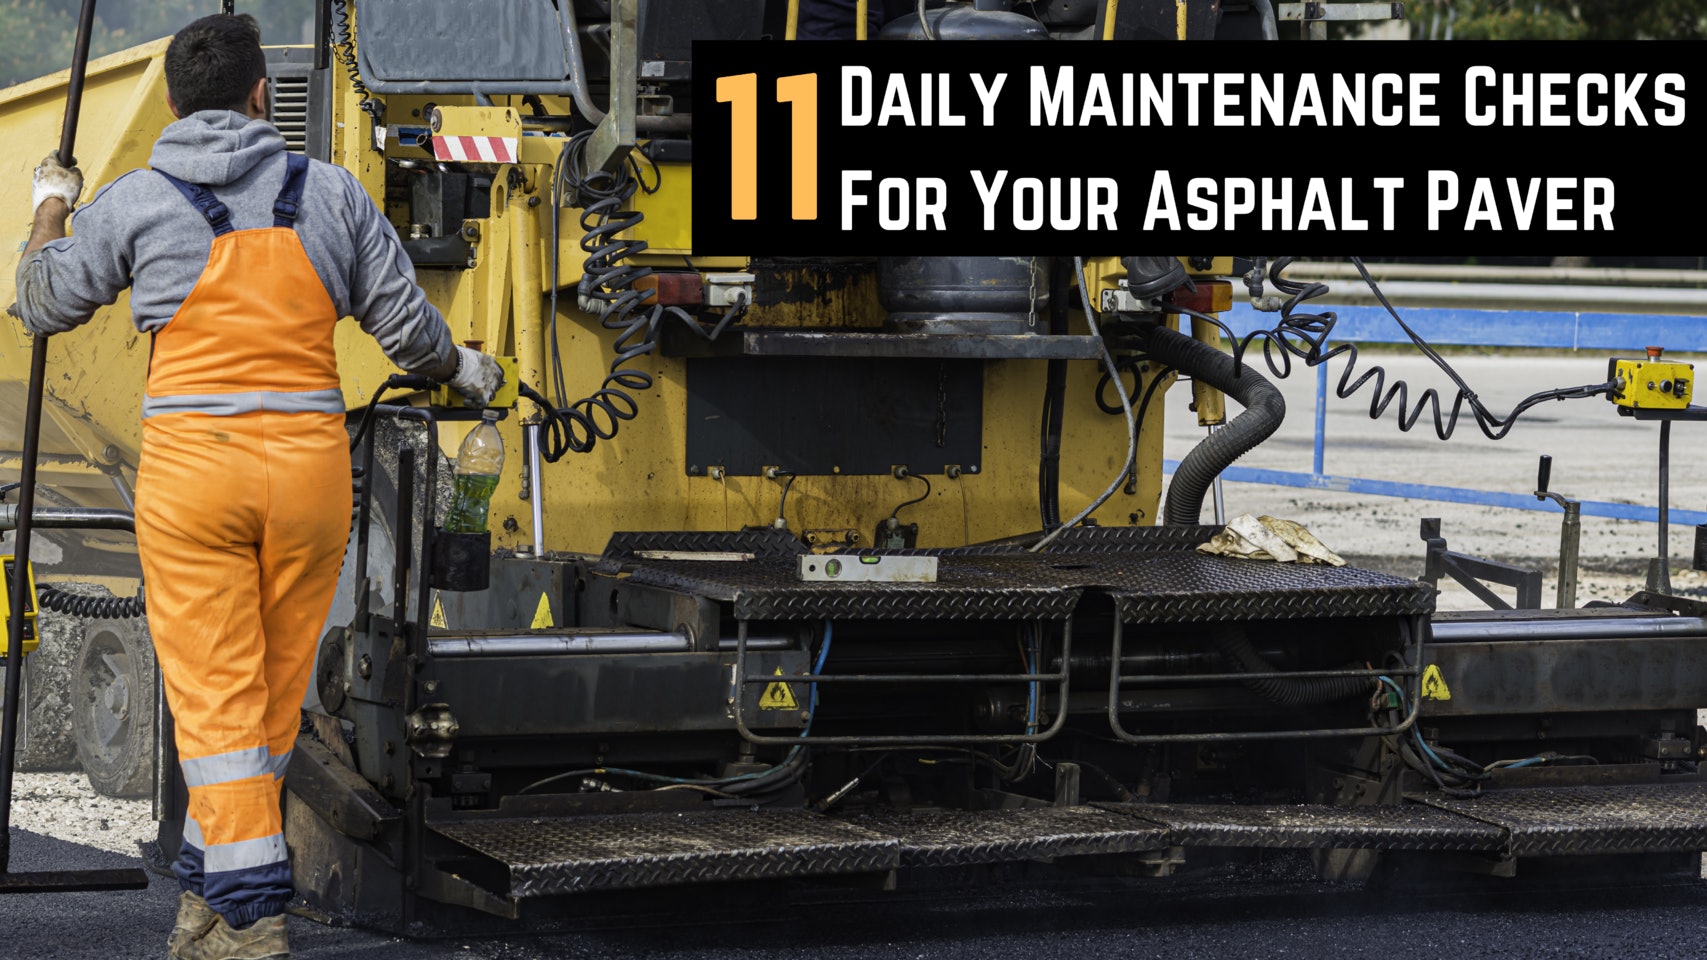 Daily Maintenance Checks For Your Asphalt Paver